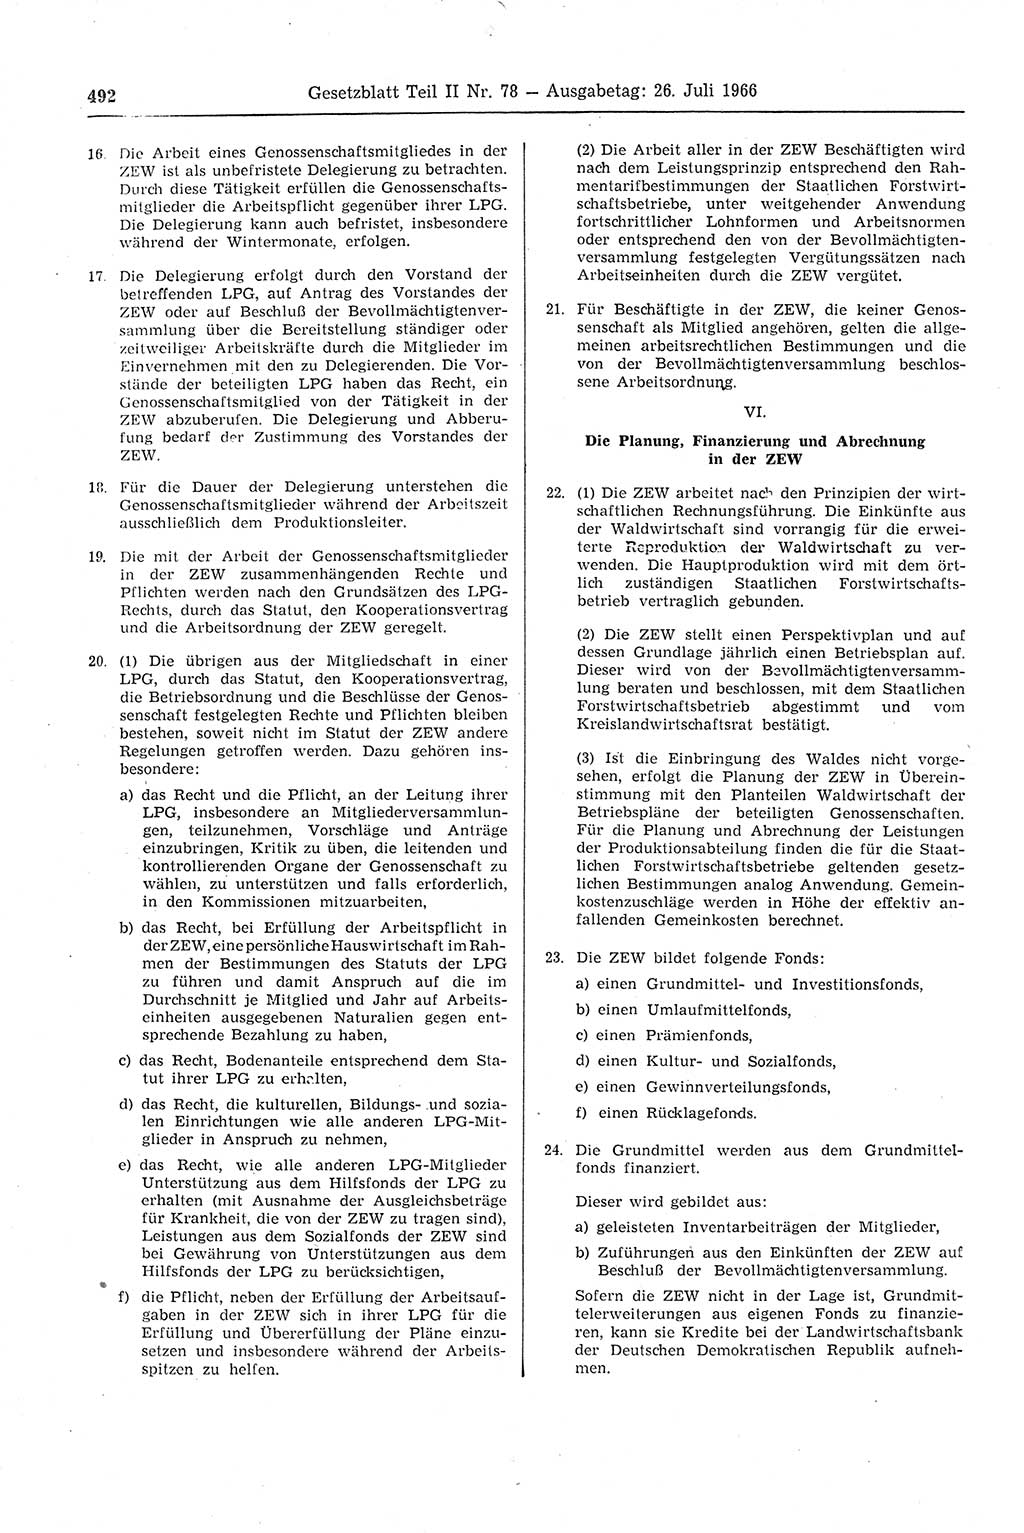 Gesetzblatt (GBl.) der Deutschen Demokratischen Republik (DDR) Teil ⅠⅠ 1966, Seite 492 (GBl. DDR ⅠⅠ 1966, S. 492)